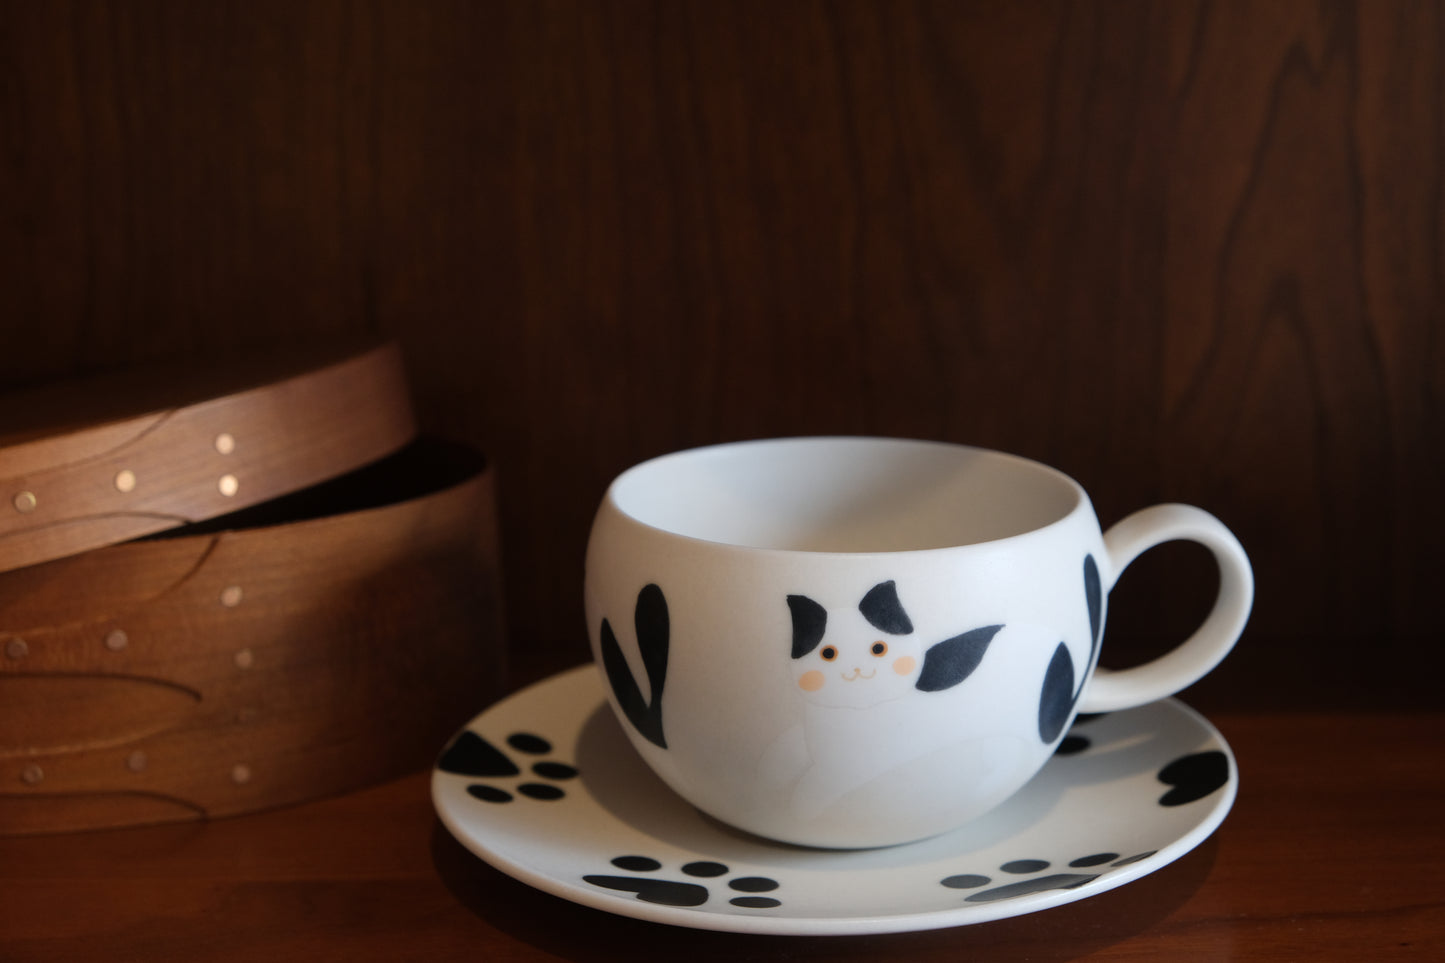 叶子手作 Yezi | Hand-painted Ceramic Cup & Saucer